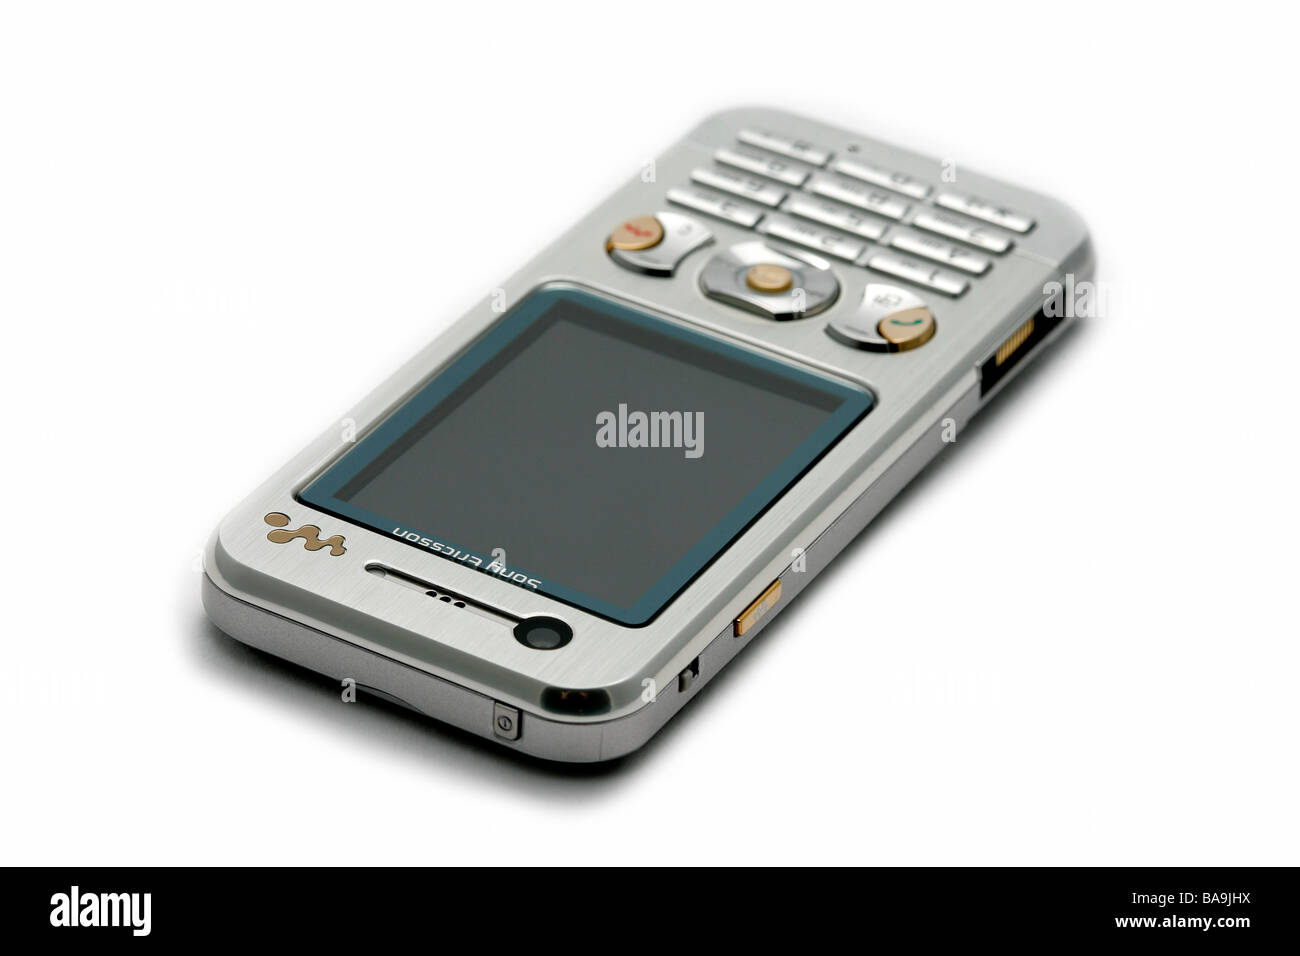 Mobile Handy zellulären handliche moderne neue Technologie kleines tragbares Telefon Telekom Telekommunikation Sony Ericsson Stockfoto